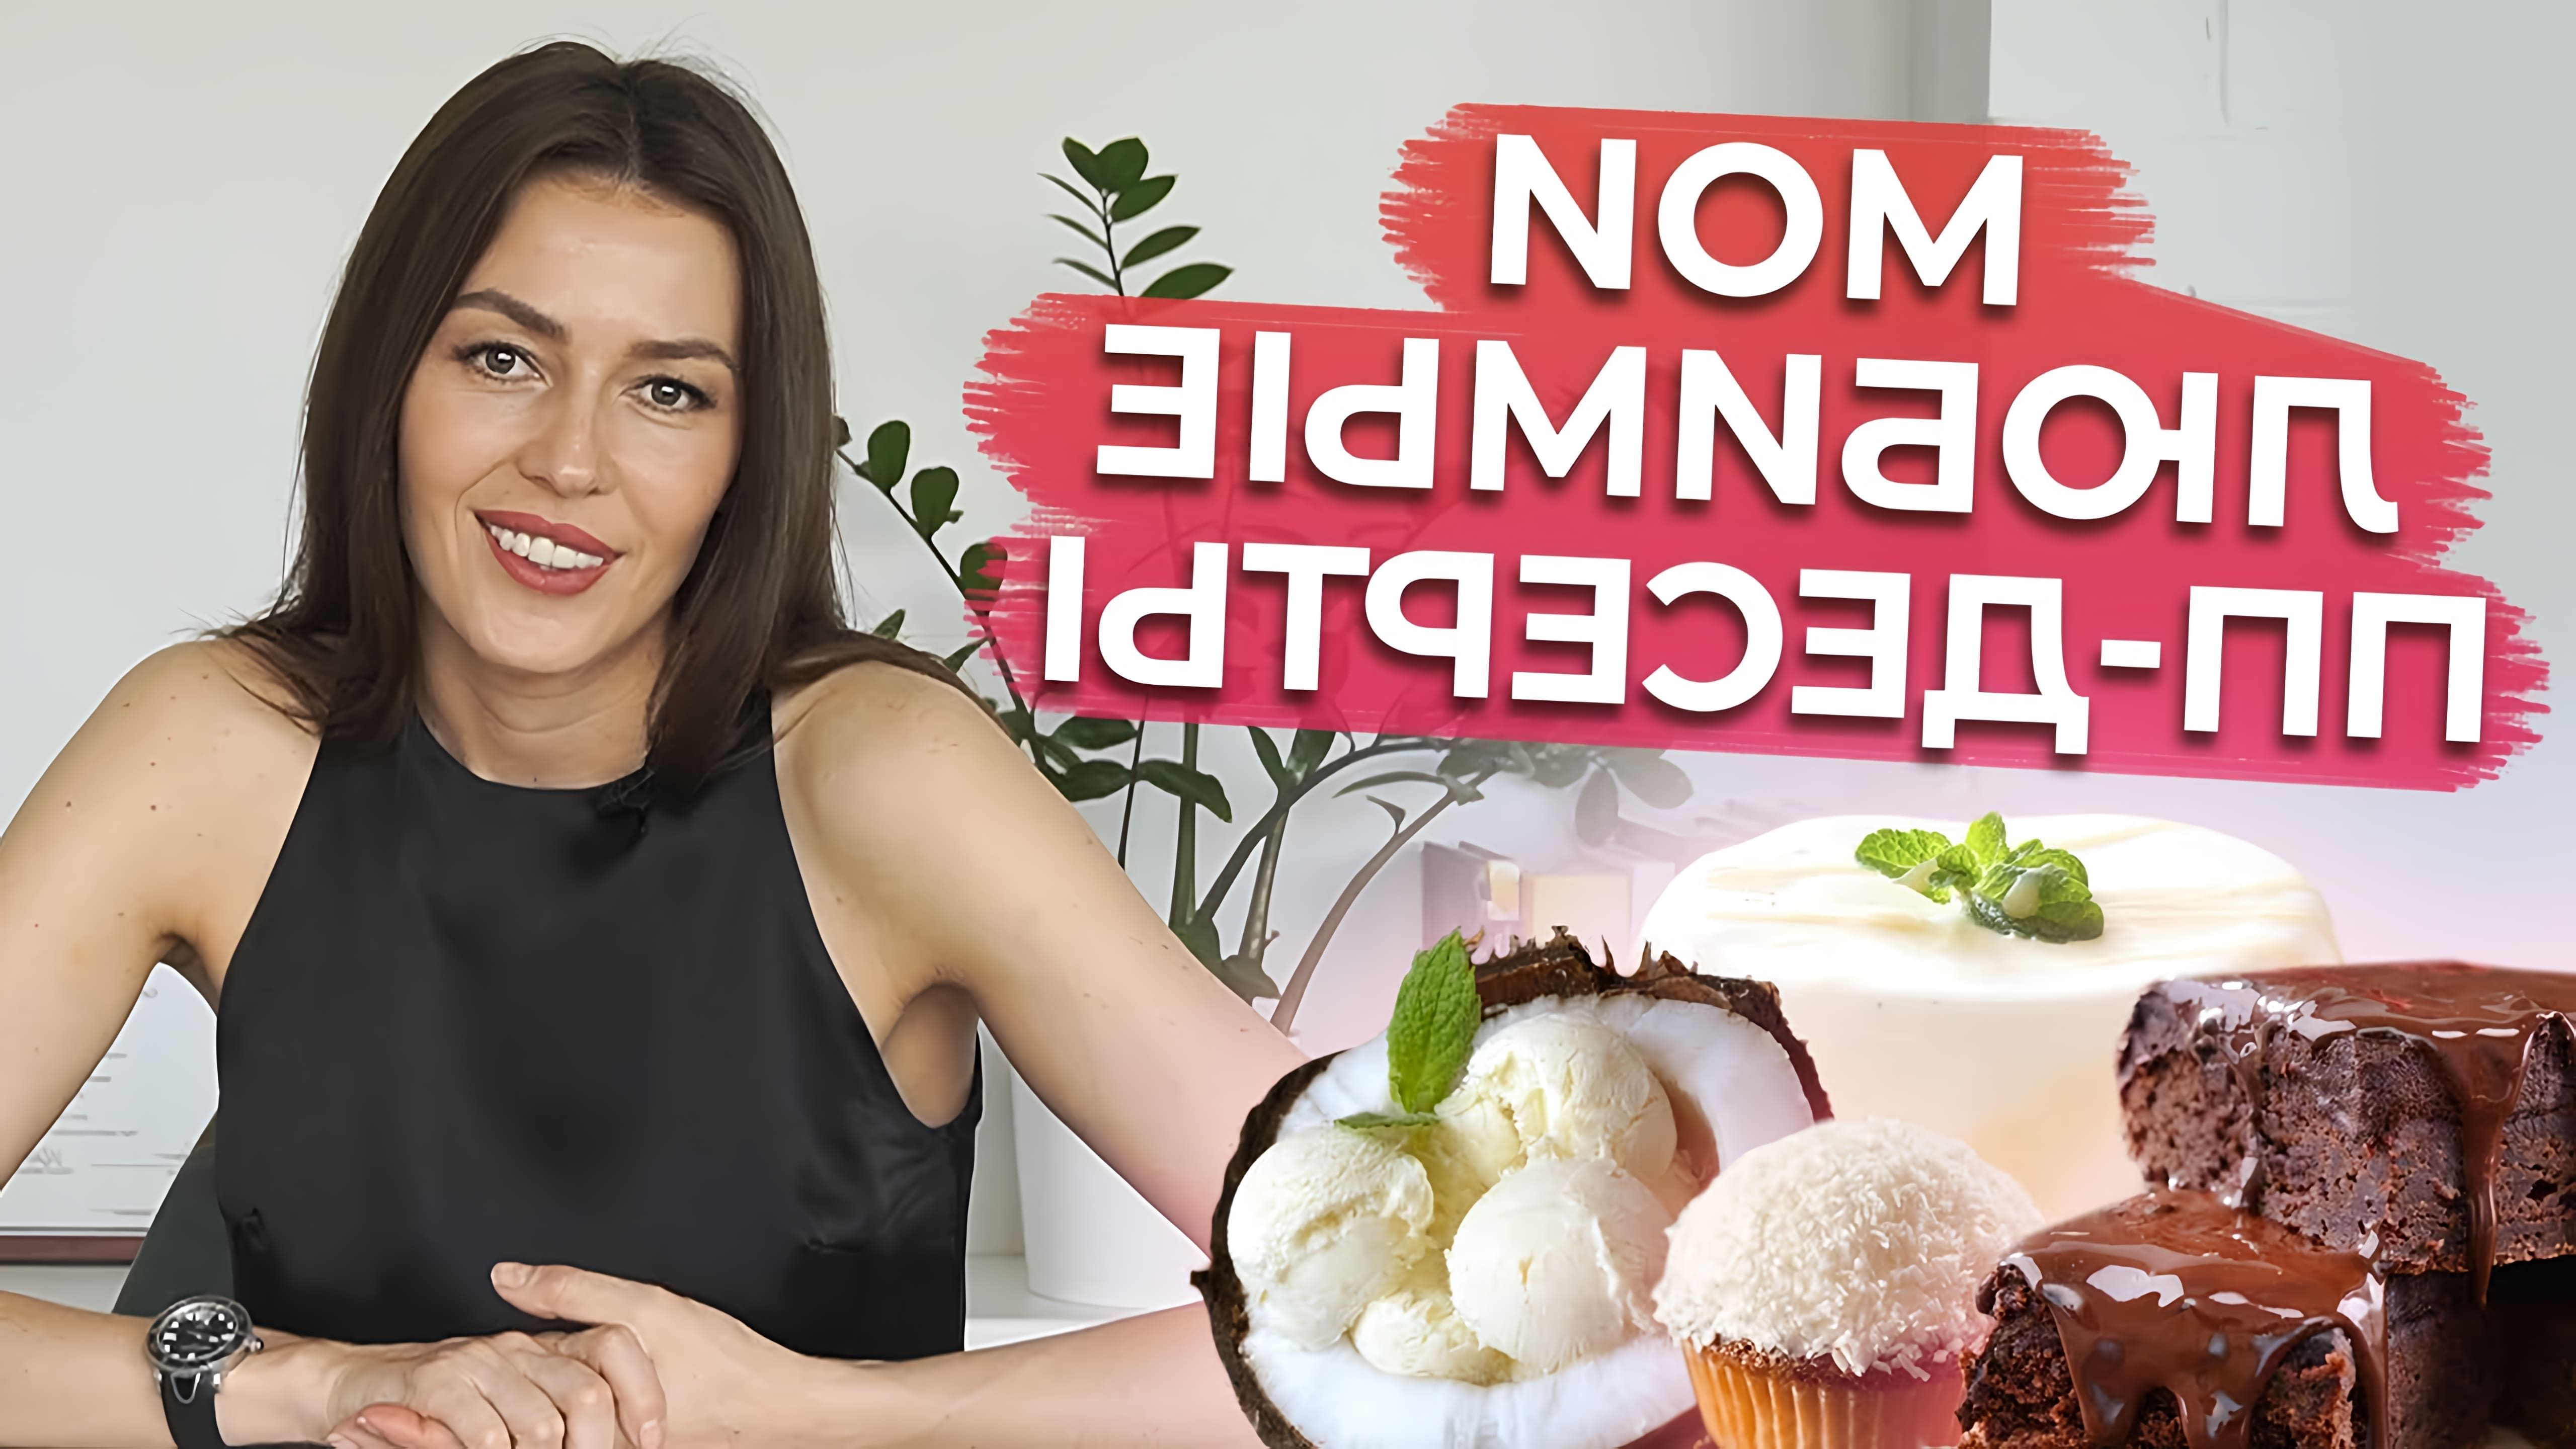 В этом видео Ксения Черная рассказывает о пяти своих любимых полезных десертах, которые можно приготовить дома